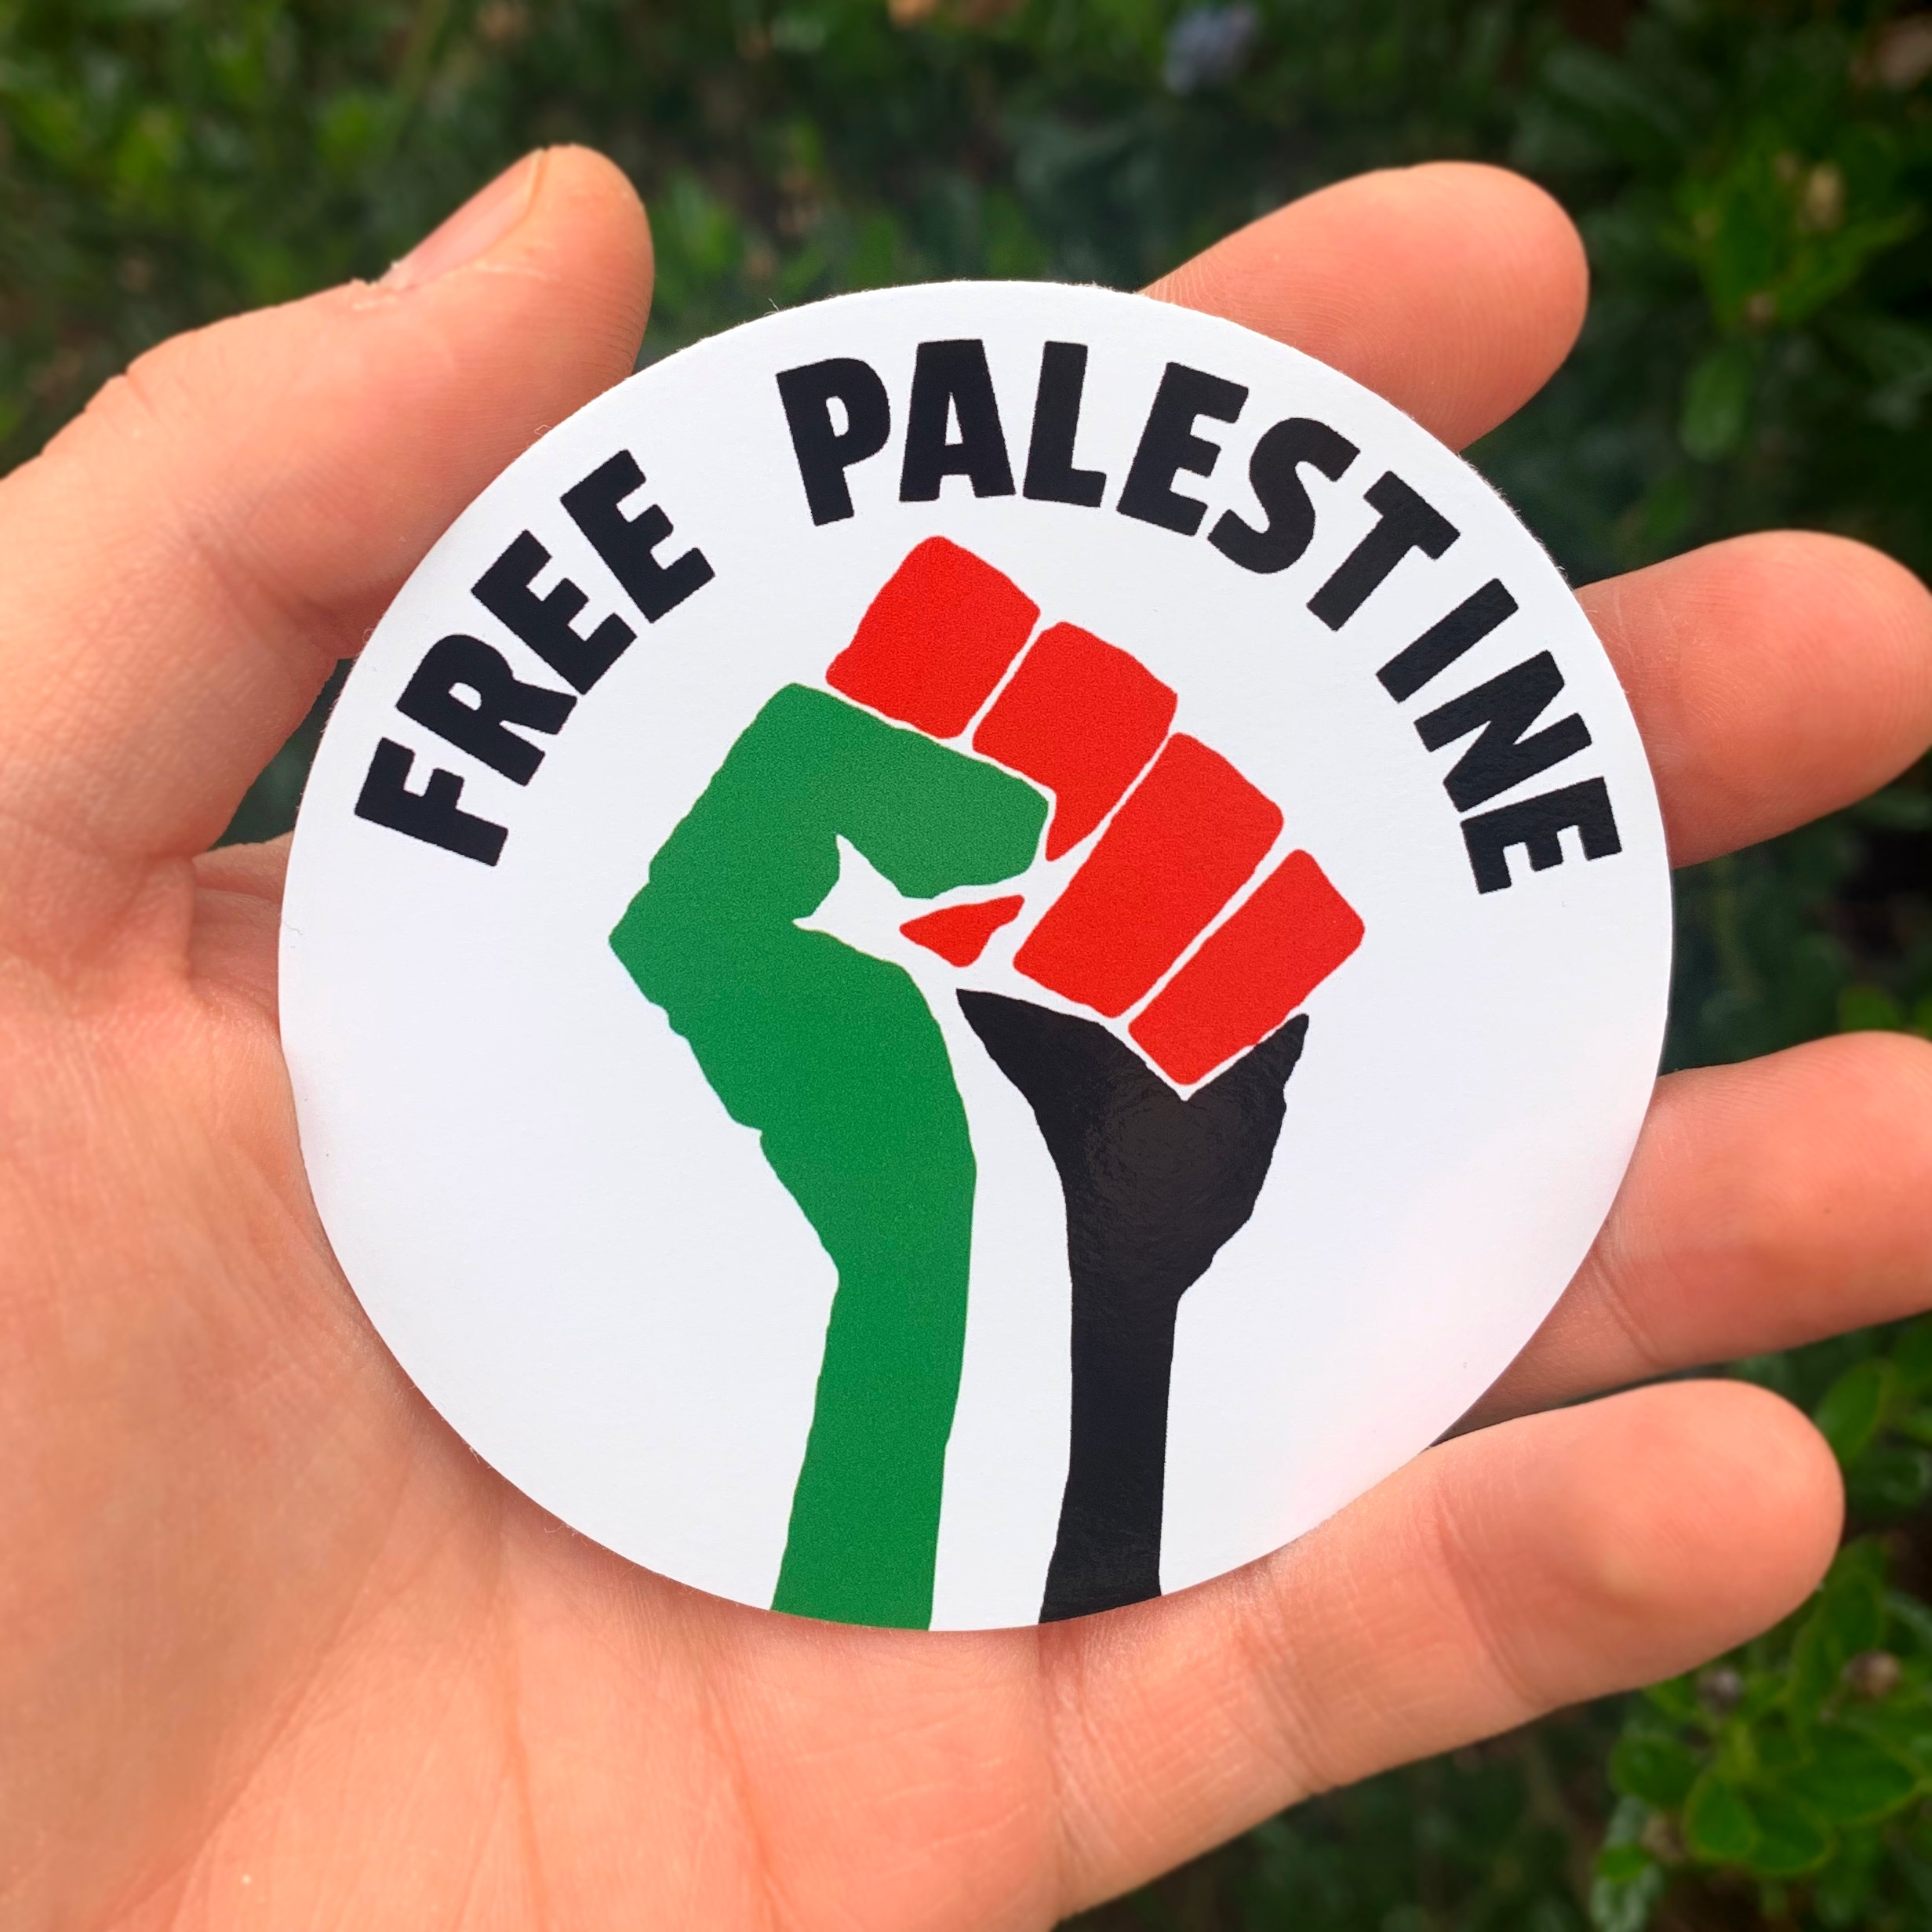 Free Palestine Hand Clenching Sticker, Sticker, Free Palestine